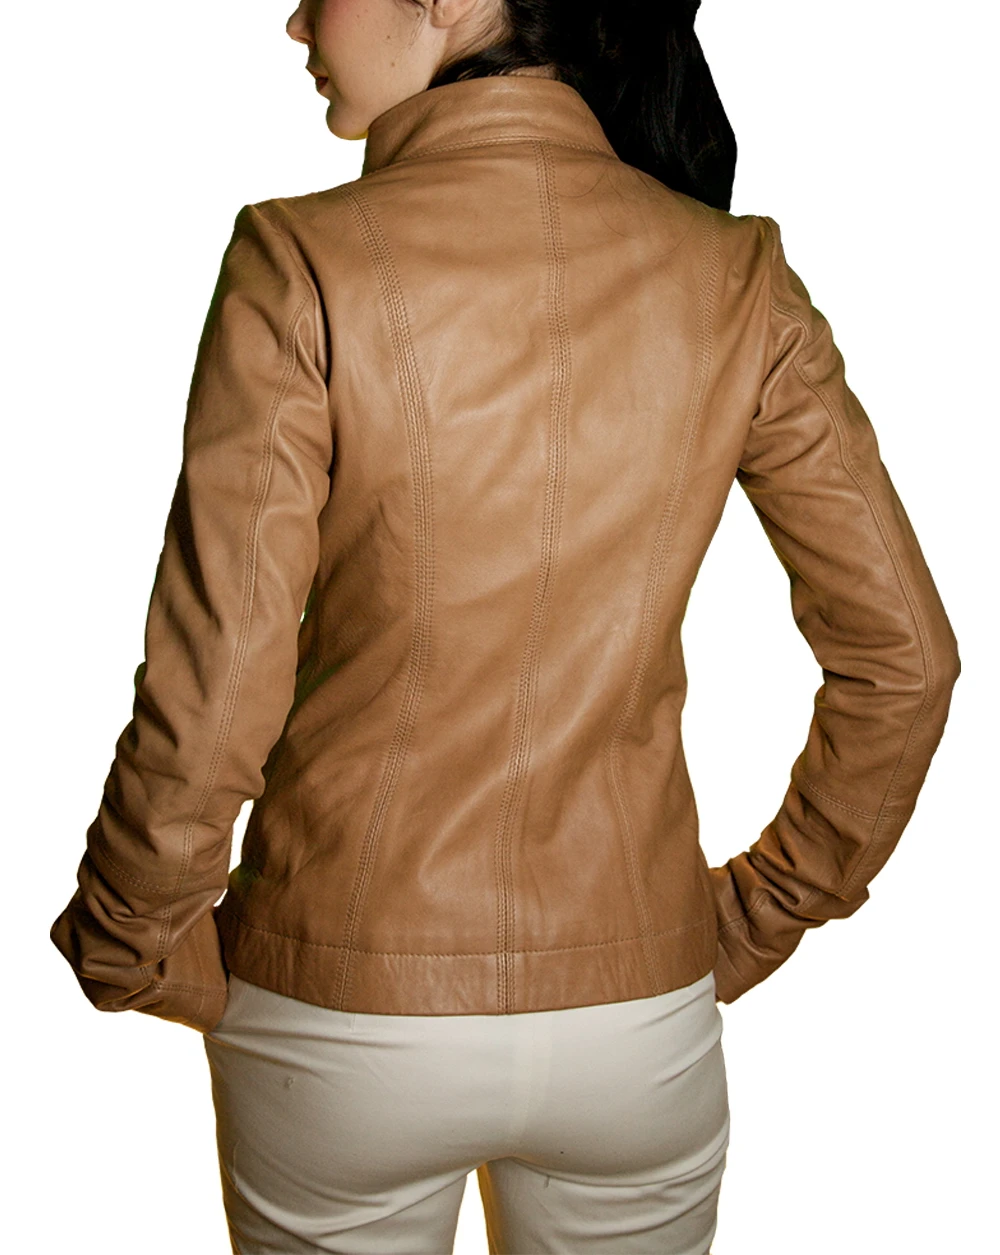 Lamb Skin Leather Jacket